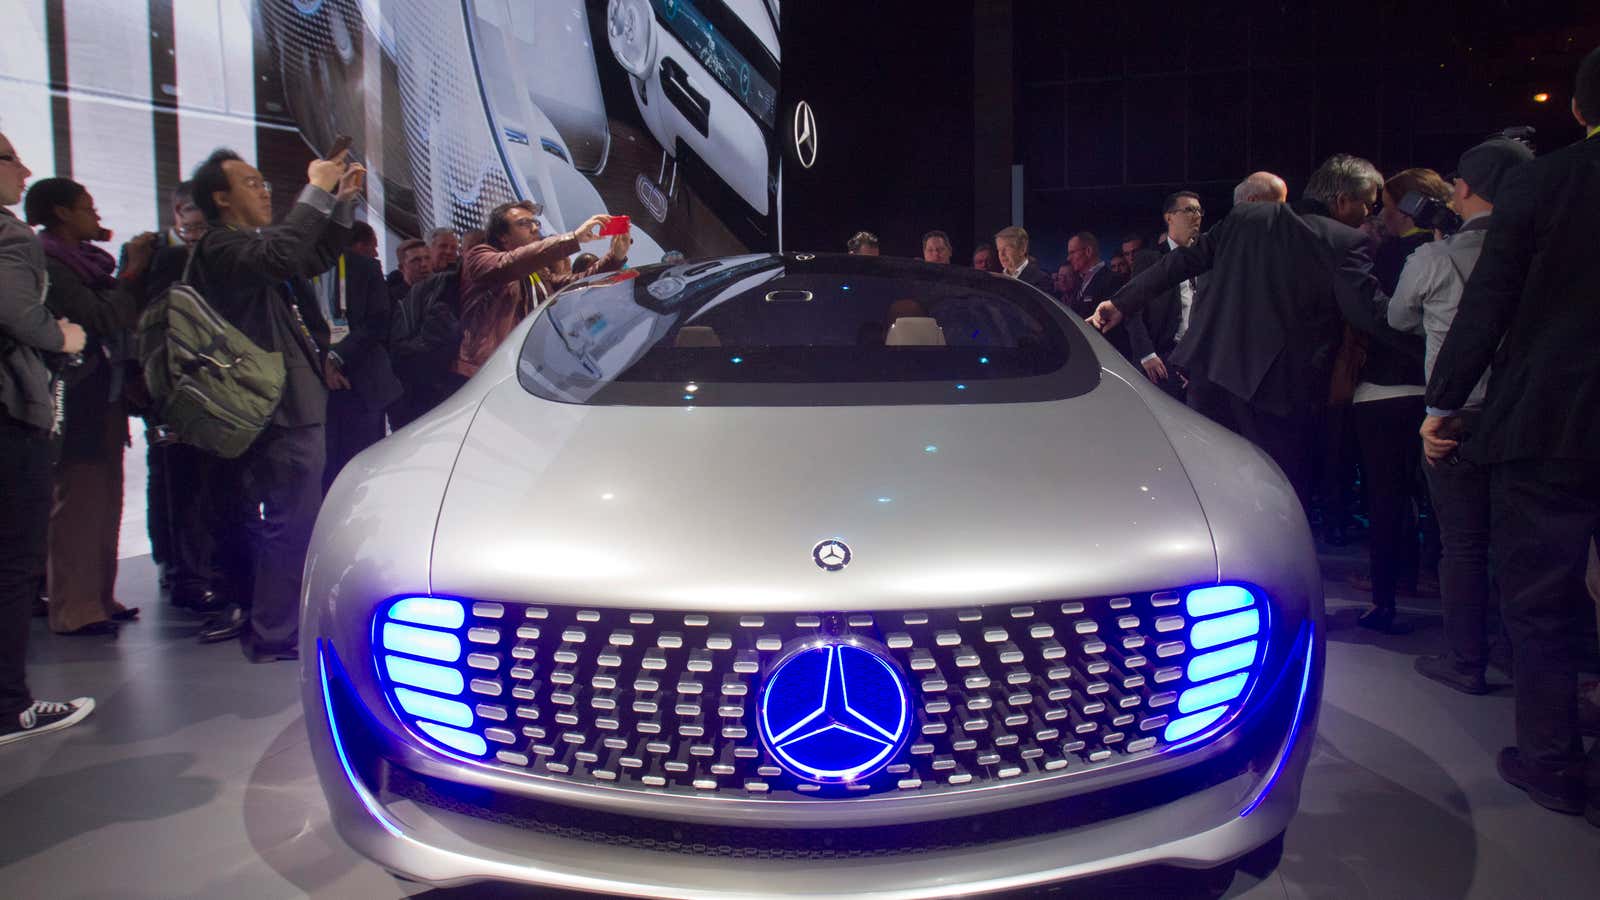 Mercedes-Benz’s F015 autonomous concept car